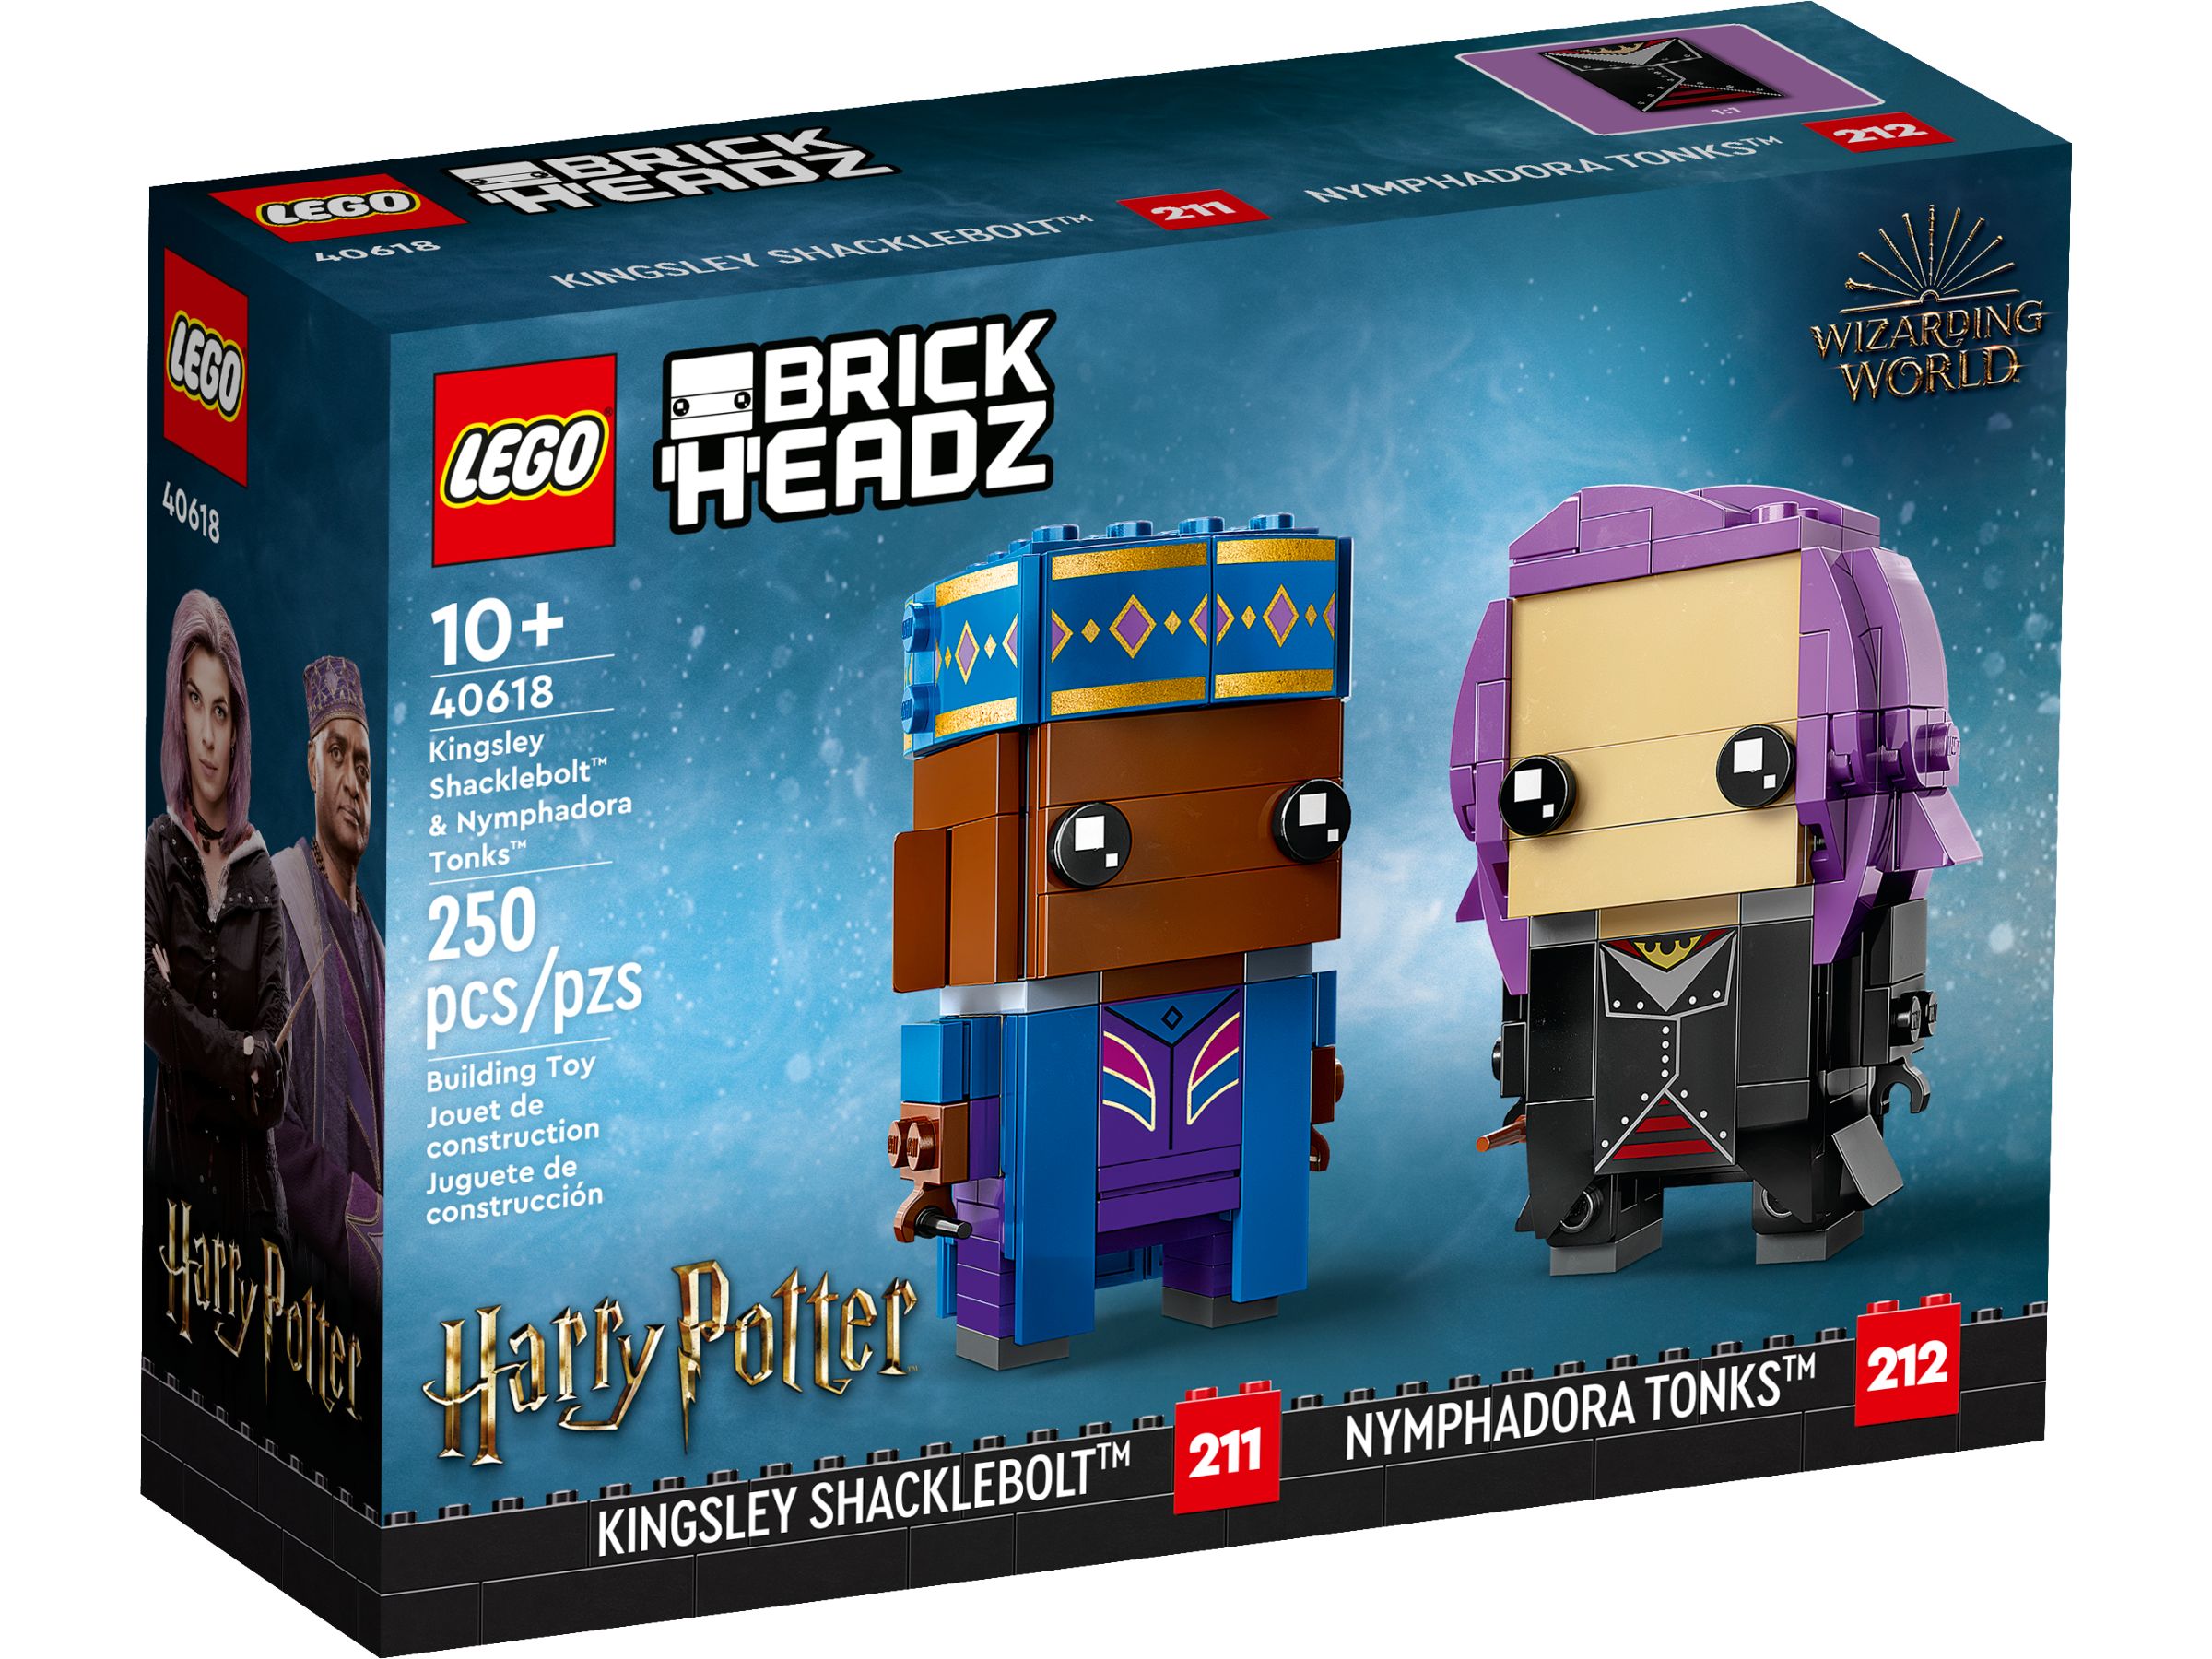 LEGO BrickHeadz 40618 Kingsley Shacklebolt™ & Nymphadora Tonks™ LEGO_40618_alt1.jpg